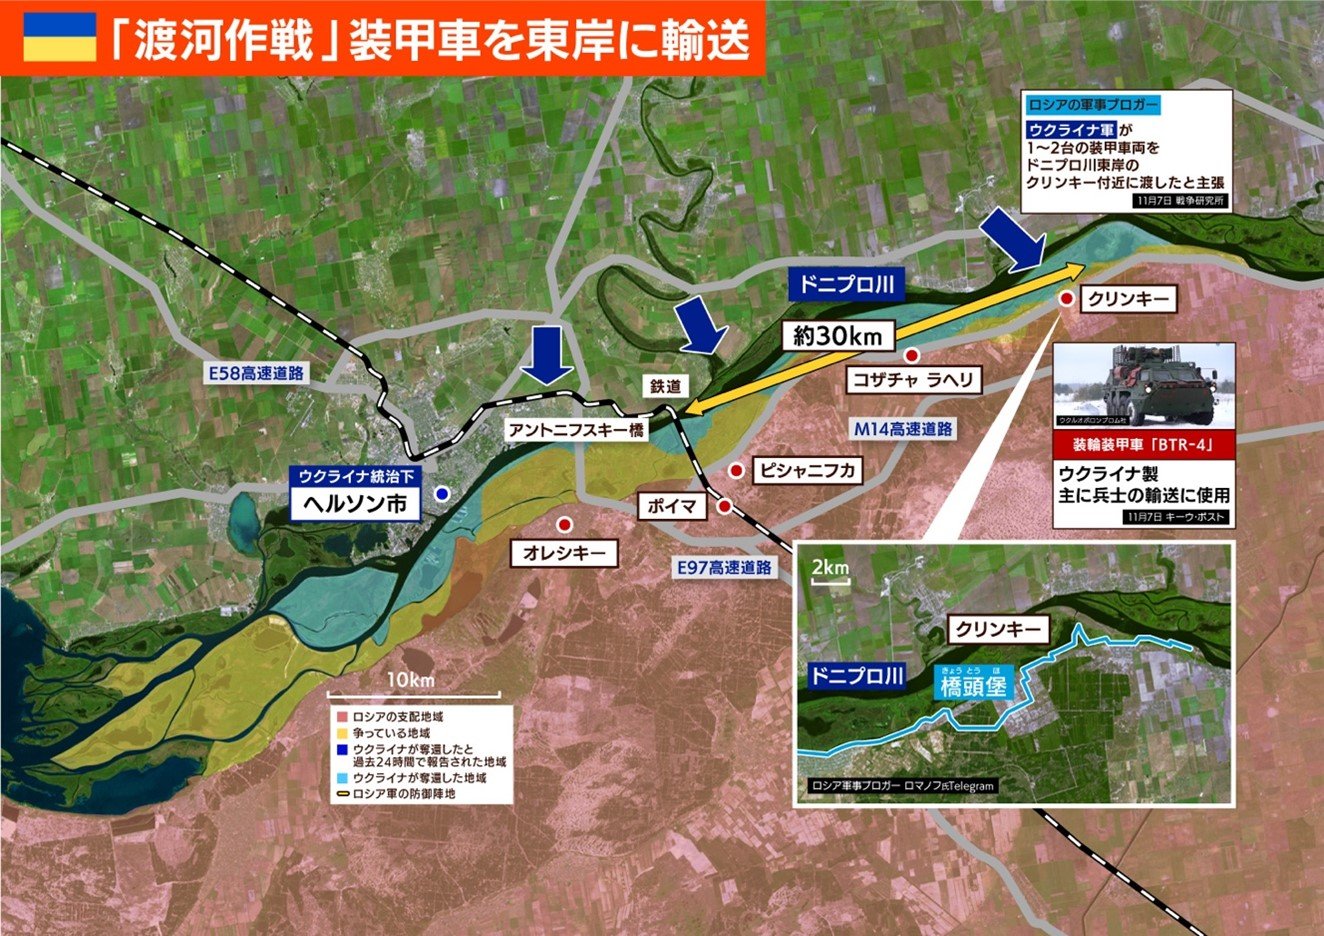 「ドニプロ川のヘルソン市周辺地域拡大地図」
（緑：ウクライナ支配地域、　赤：ロシア支配地域、青：ウクライナ軍が奪還、橋頭堡を確保している地域、黄色：戦闘区域）
